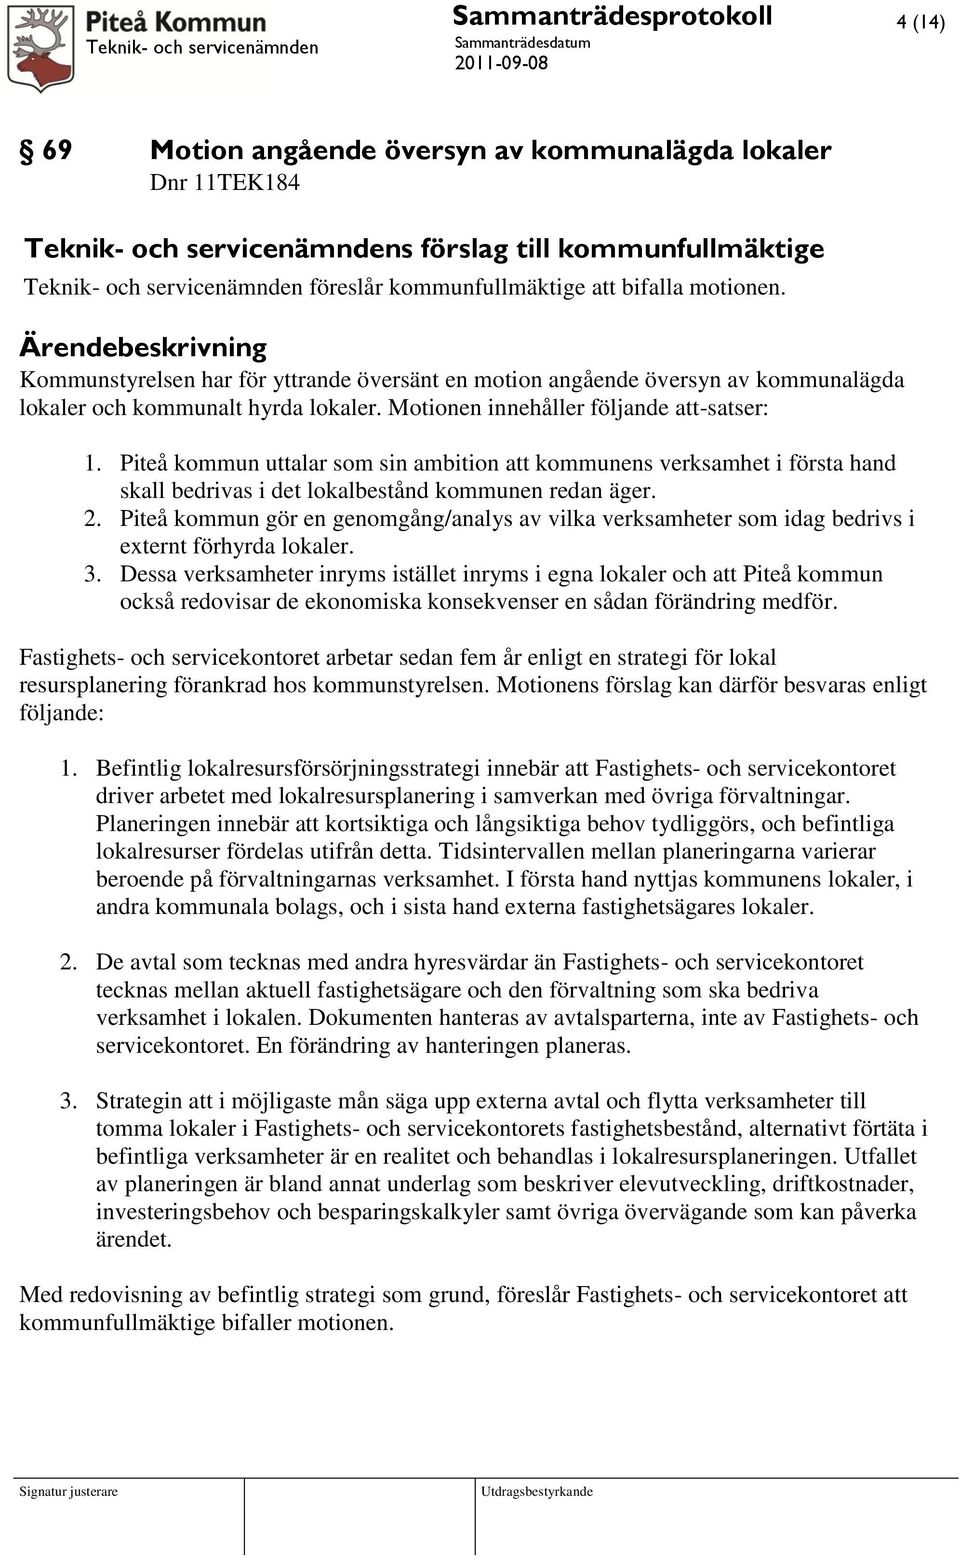 Piteå kommun uttalar som sin ambition att kommunens verksamhet i första hand skall bedrivas i det lokalbestånd kommunen redan äger. 2.